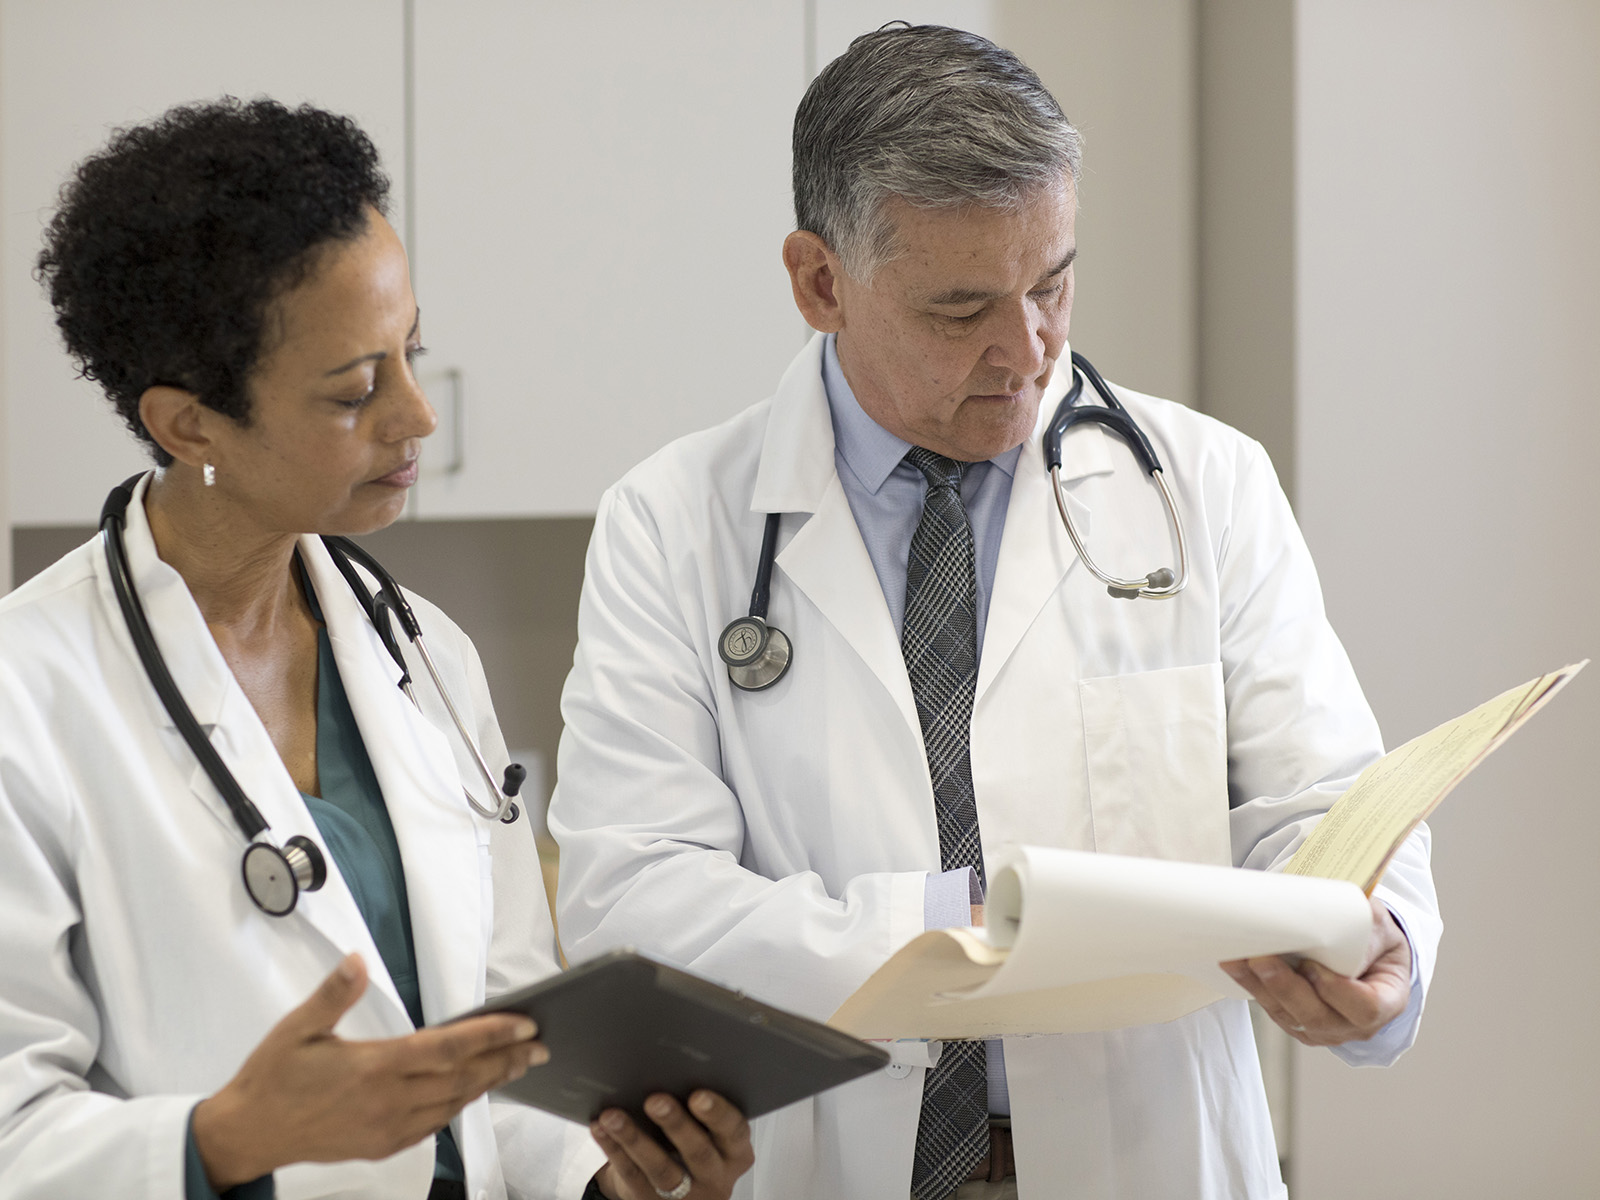 Dos médicos con guardapolvos blancos conversan sobre la información en un expediente clínico.